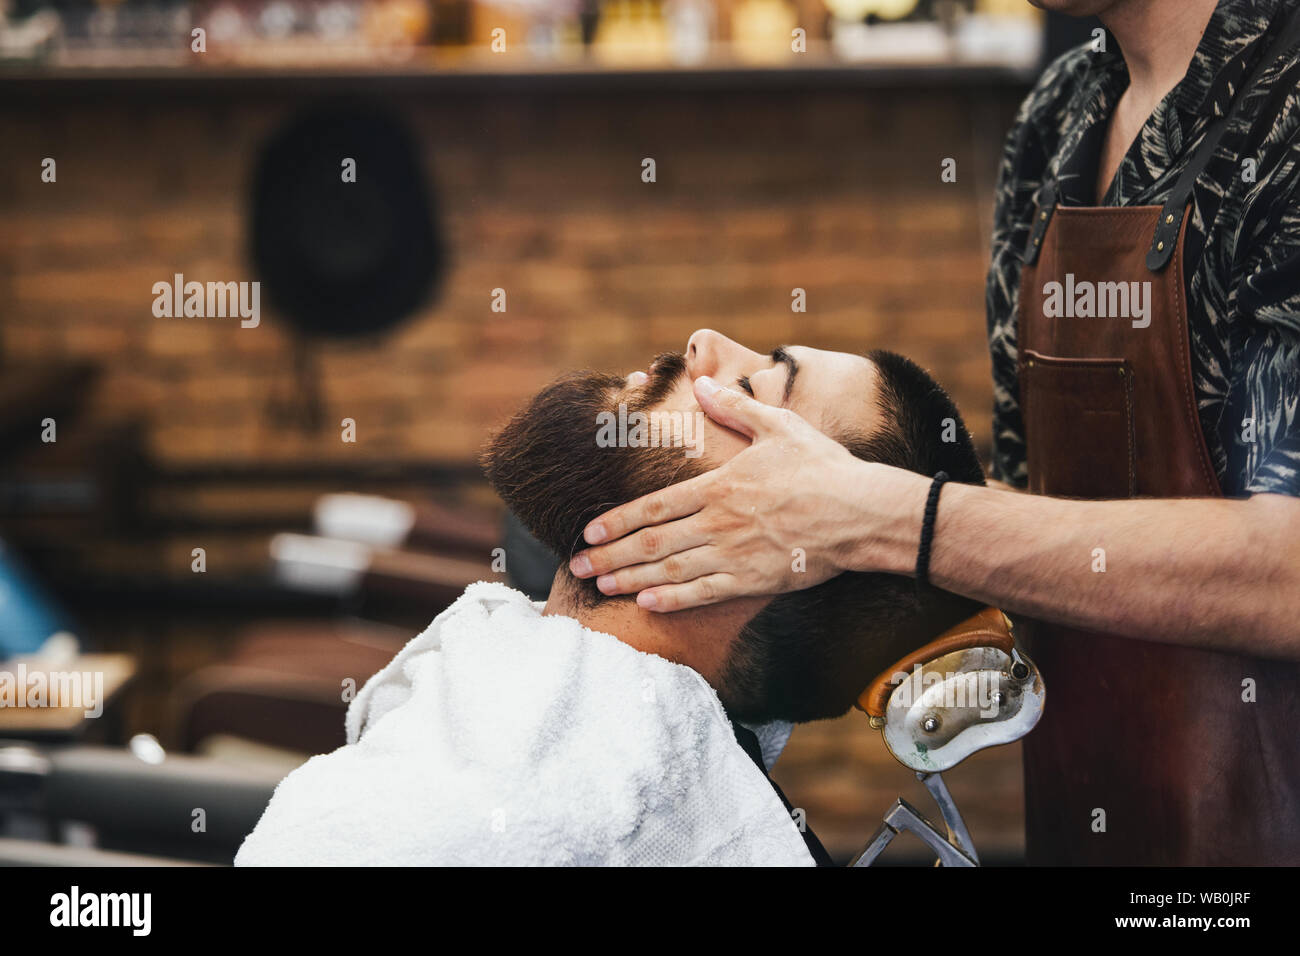 Stattlicher Mann mit Bart und geschlossenen Augen in einem schwarzen Haare schneiden Kap in der Barbershop. Friseur in tut ihm eine Gesichtsmassage. Nahaufnahme. Horizontale. Stockfoto